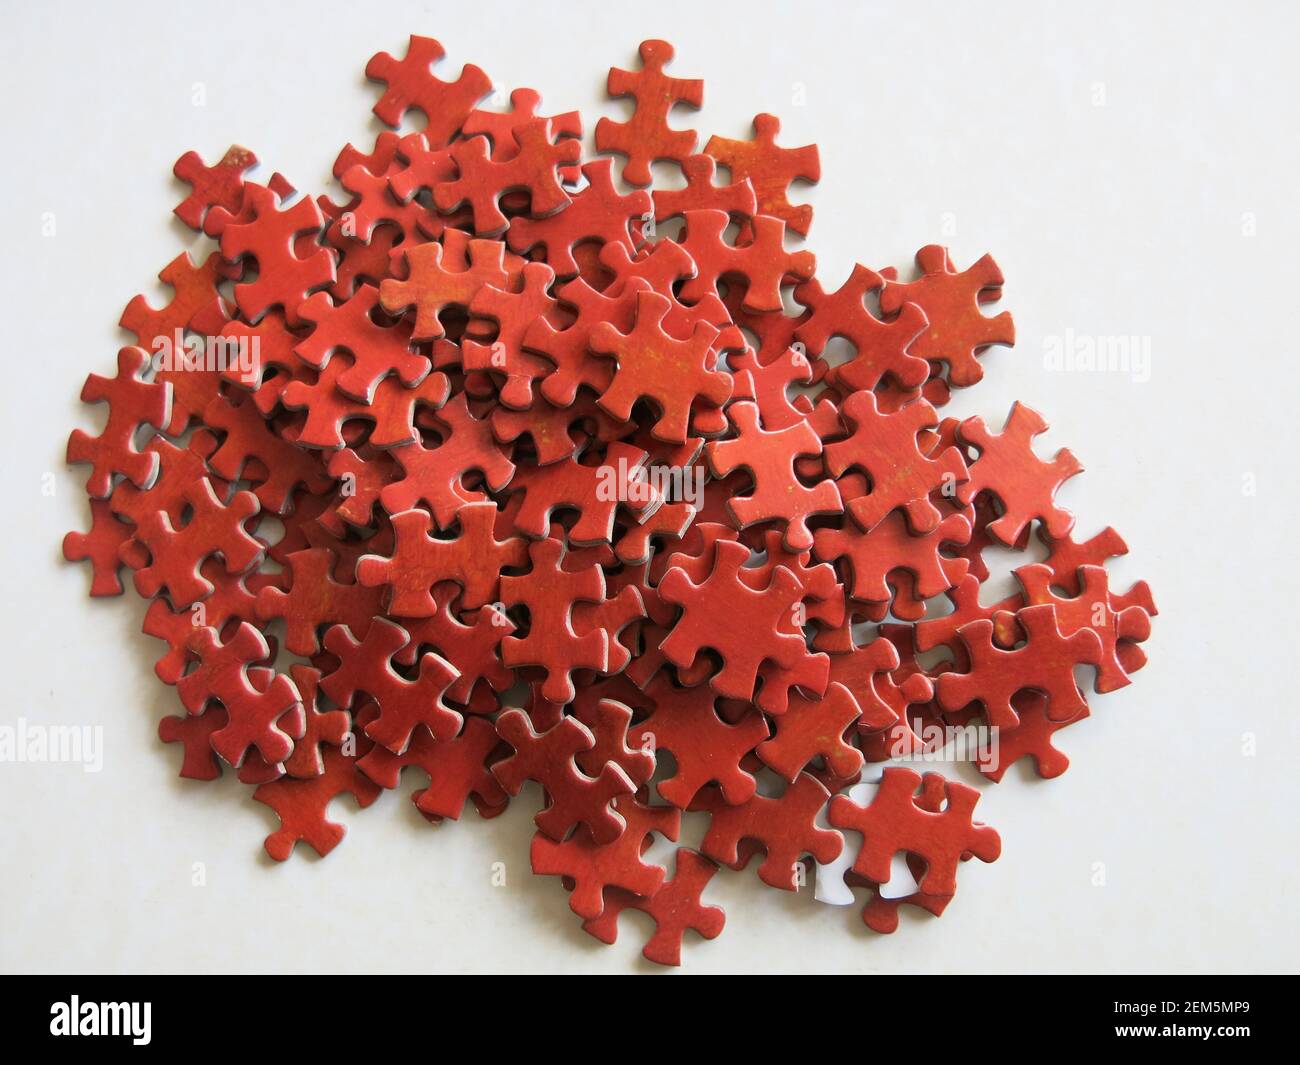 Per il puzzle fanatico; un mucchio di pezzi rossi che tutti sembrano identici. Foto Stock